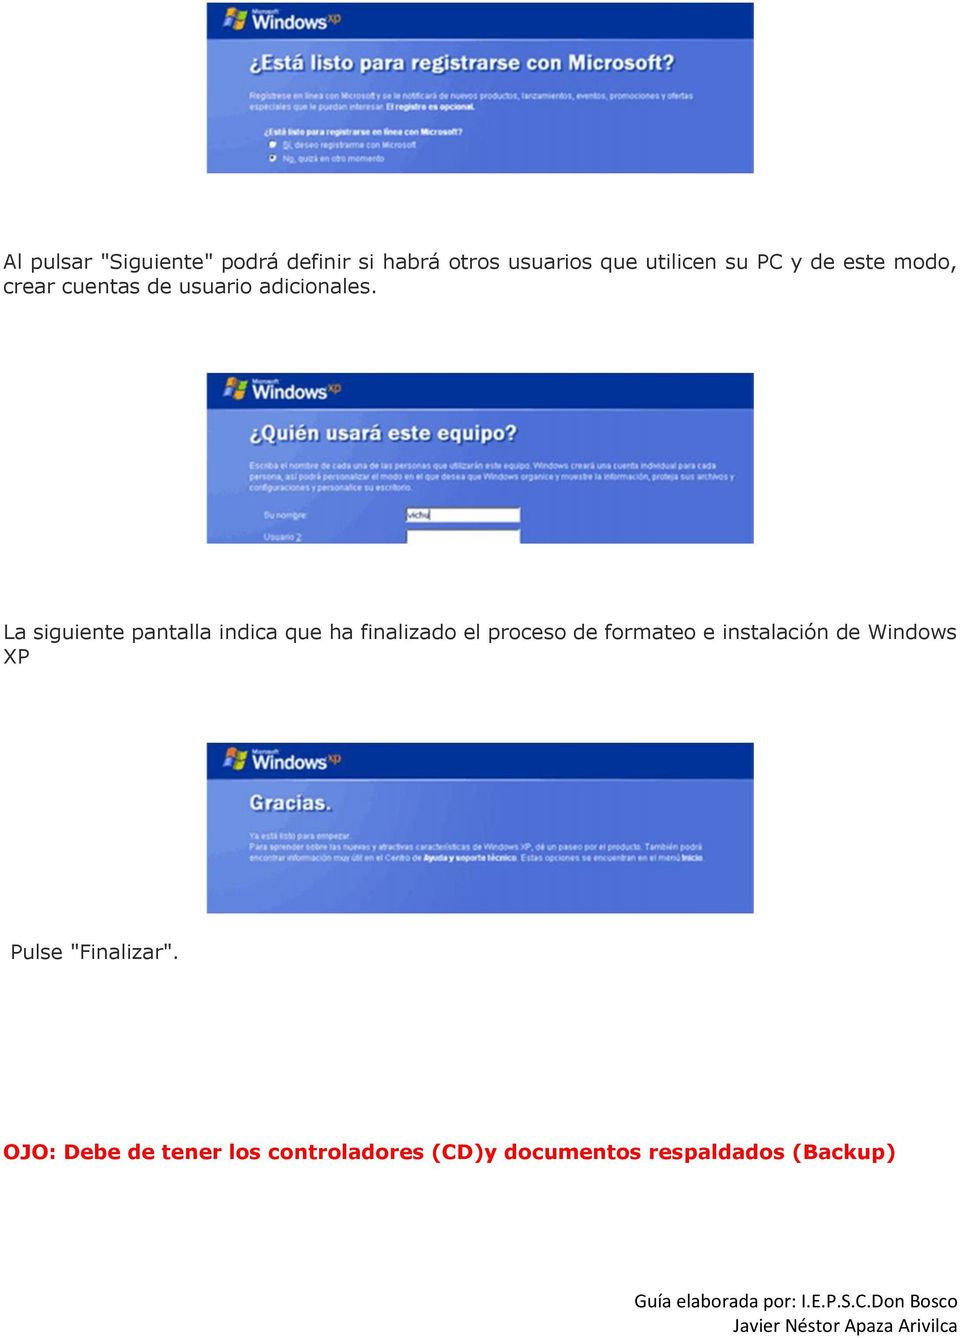 La siguiente pantalla indica que ha finalizado el proceso de formateo e instalación de Windows XP